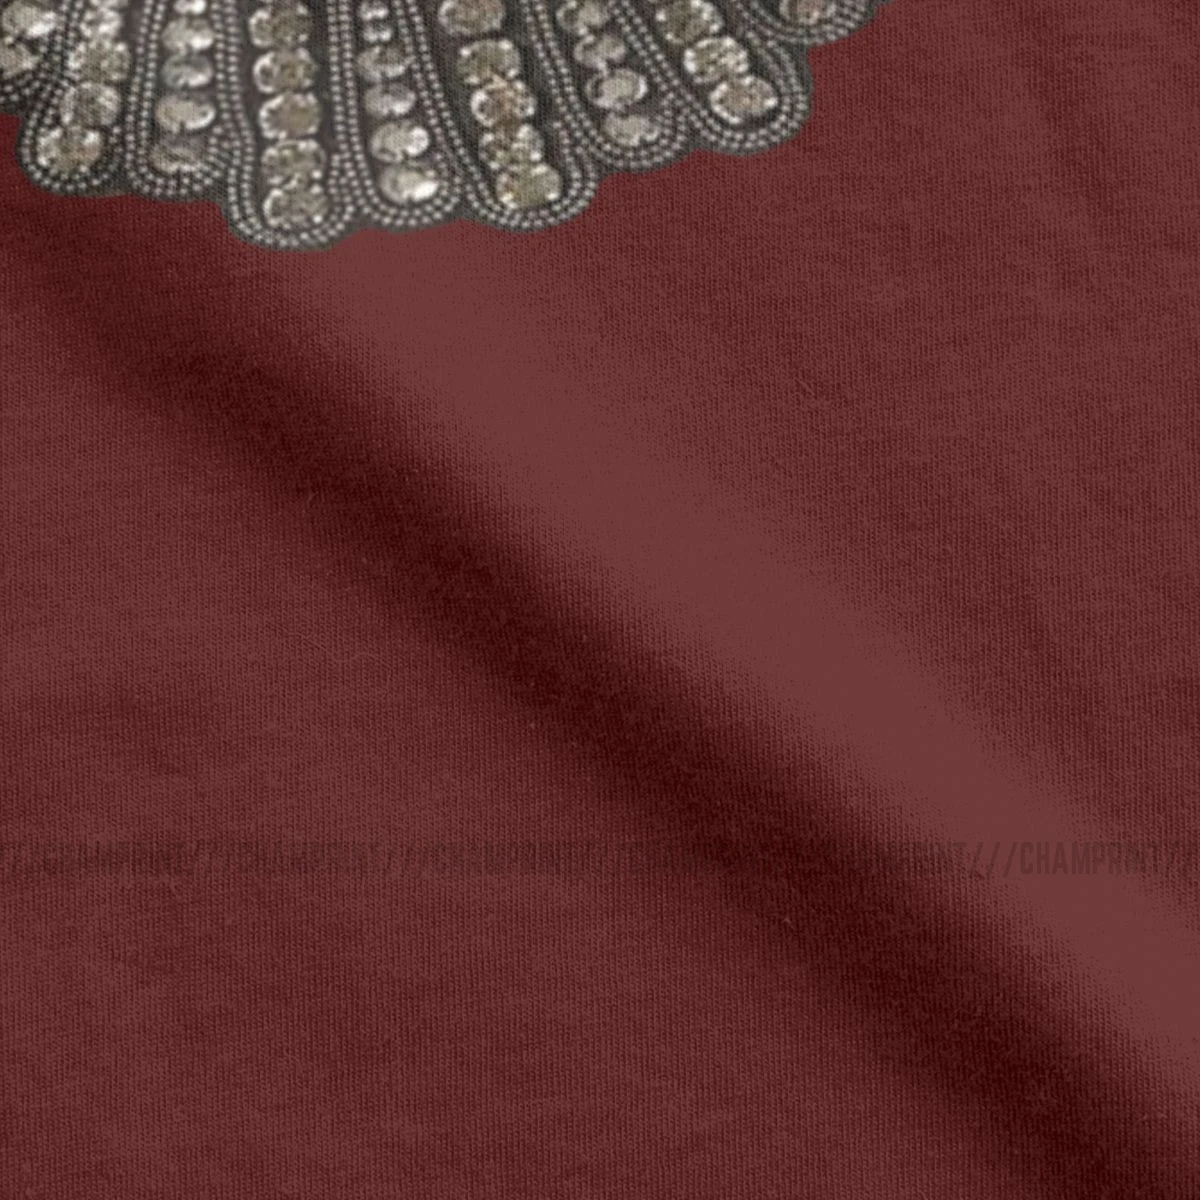 Kvinders Ruth Bader Ginsburg Uenighed Krave RBG T-shirt Feministiske T-Shirt Tumblr Tee Shirt, Toppe Punk Kvindelige Tøj Trykt